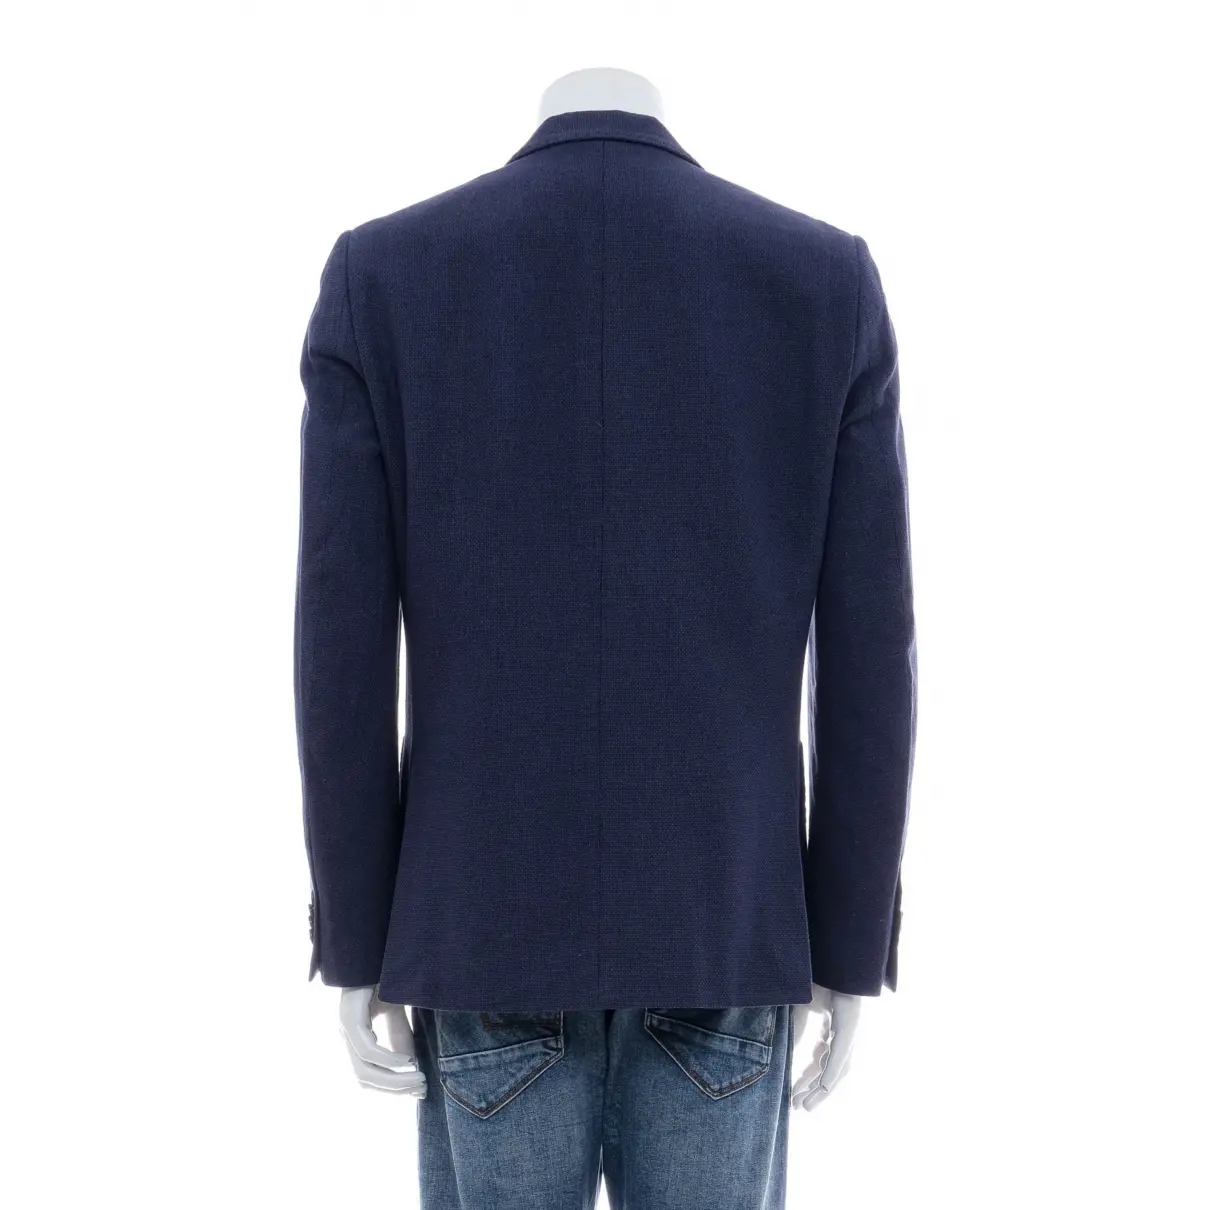 Buy Hayward Linen jacket online